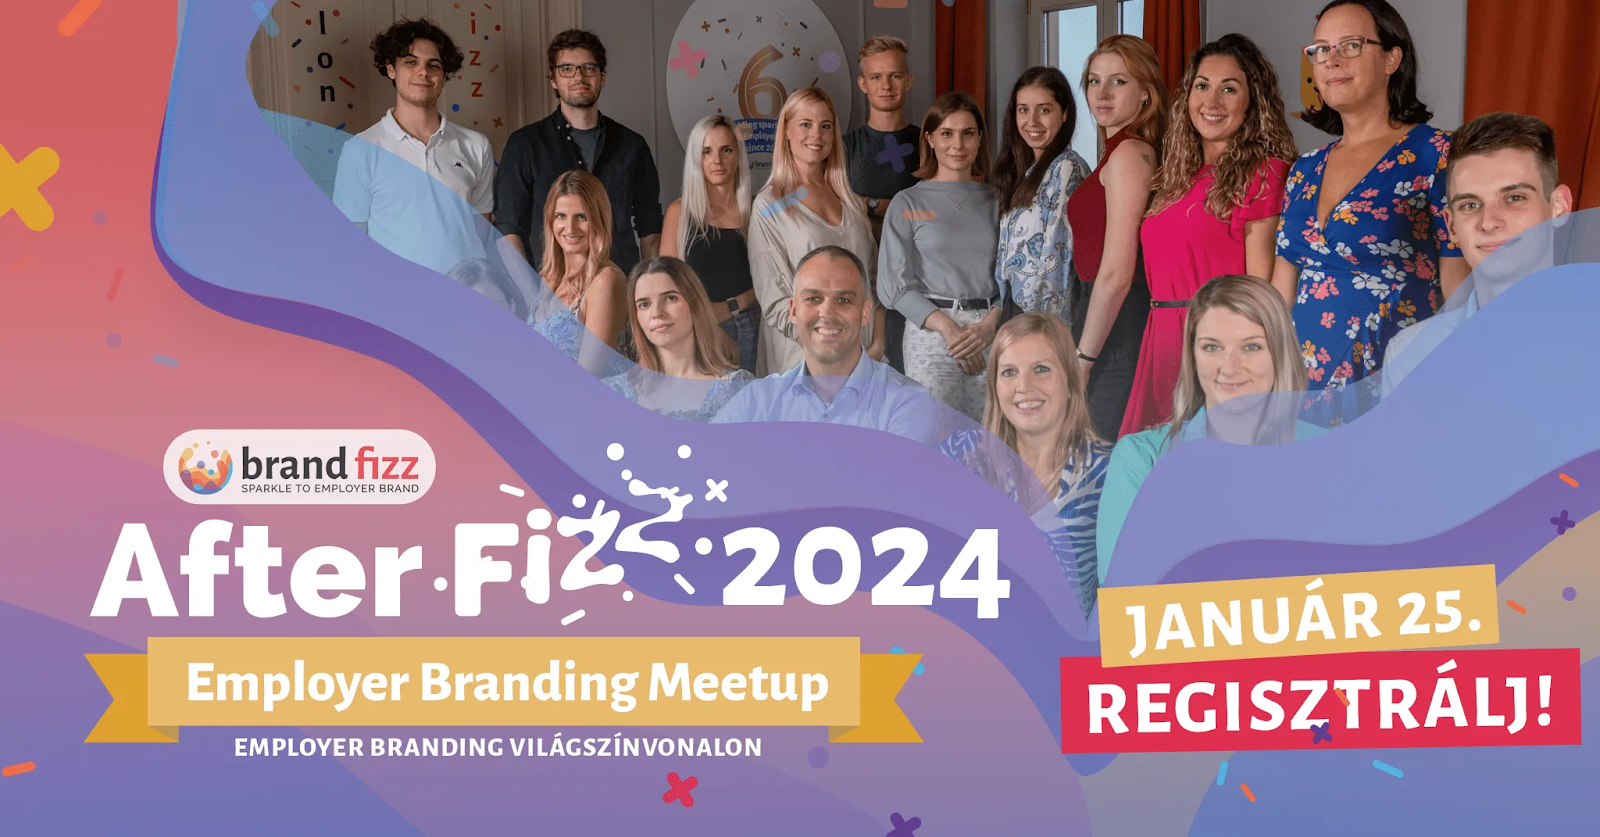 Afterfizz 2024 Employer Branding Meetup